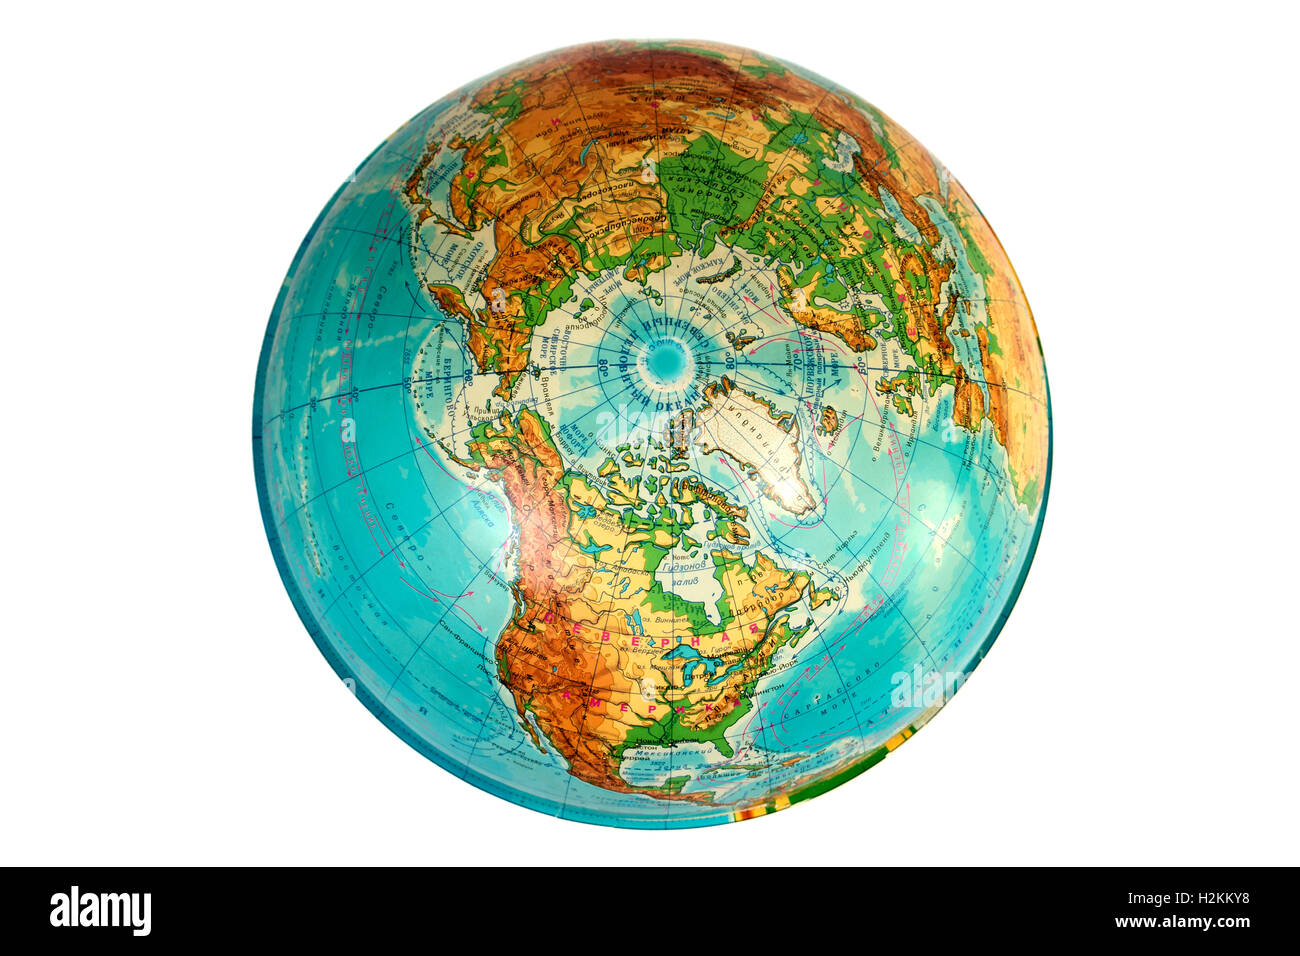 Globus aus russischer Sicht von oben am Nordpol Stockfotografie - Alamy